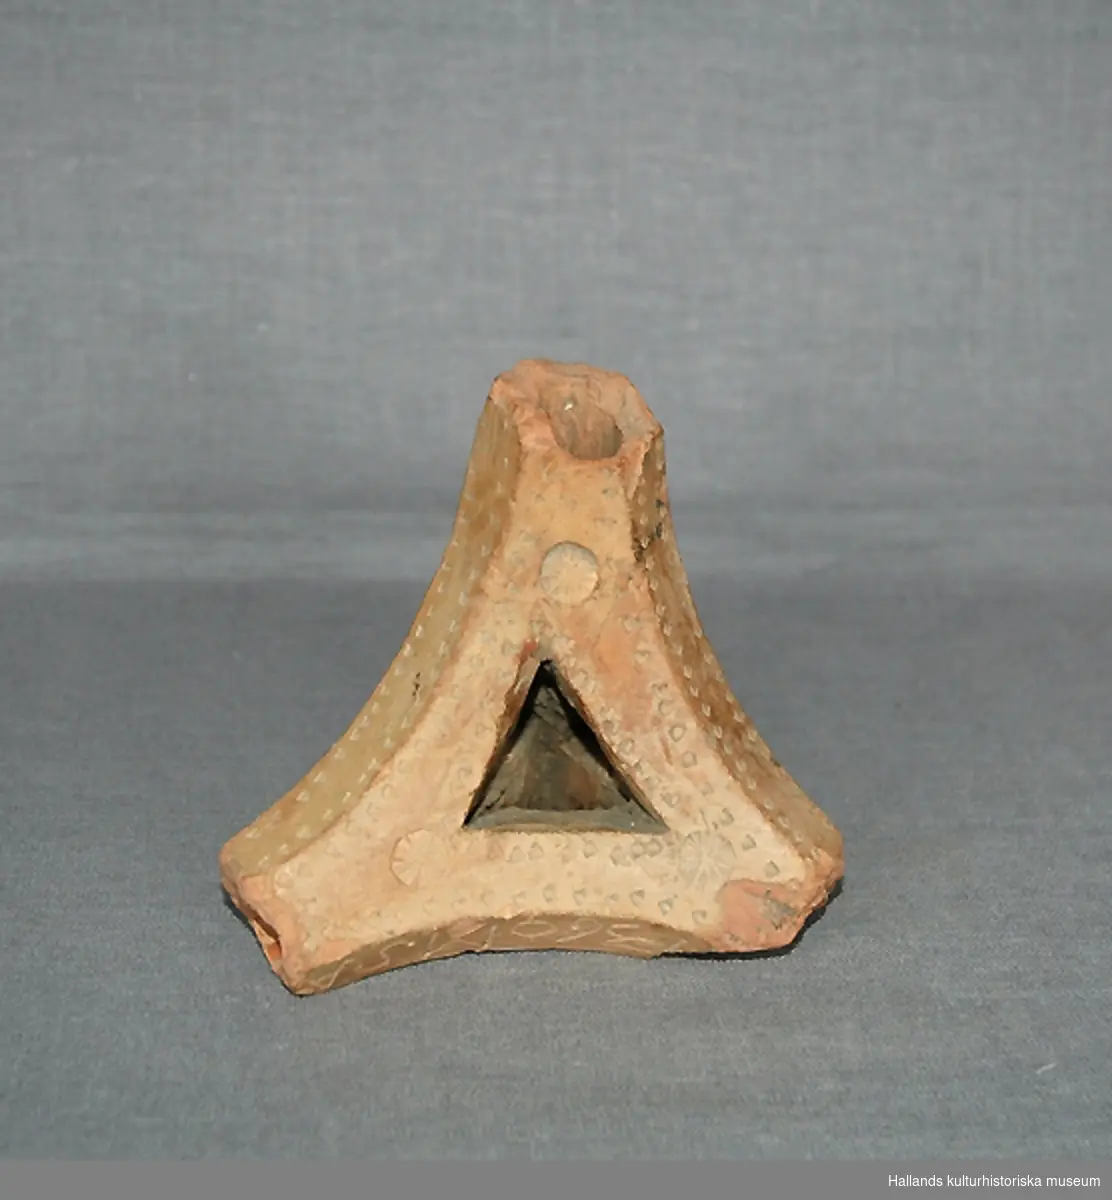 Ljusstake (fotangelstake) av bränt lergods. Trekantig form, består av fyra pipor. När en pipa används fungerar de övriga tre som fot. Dekorerad med ett tryckt mönster i lergodset. 
Märkt: "1360 MSA" (datering?)